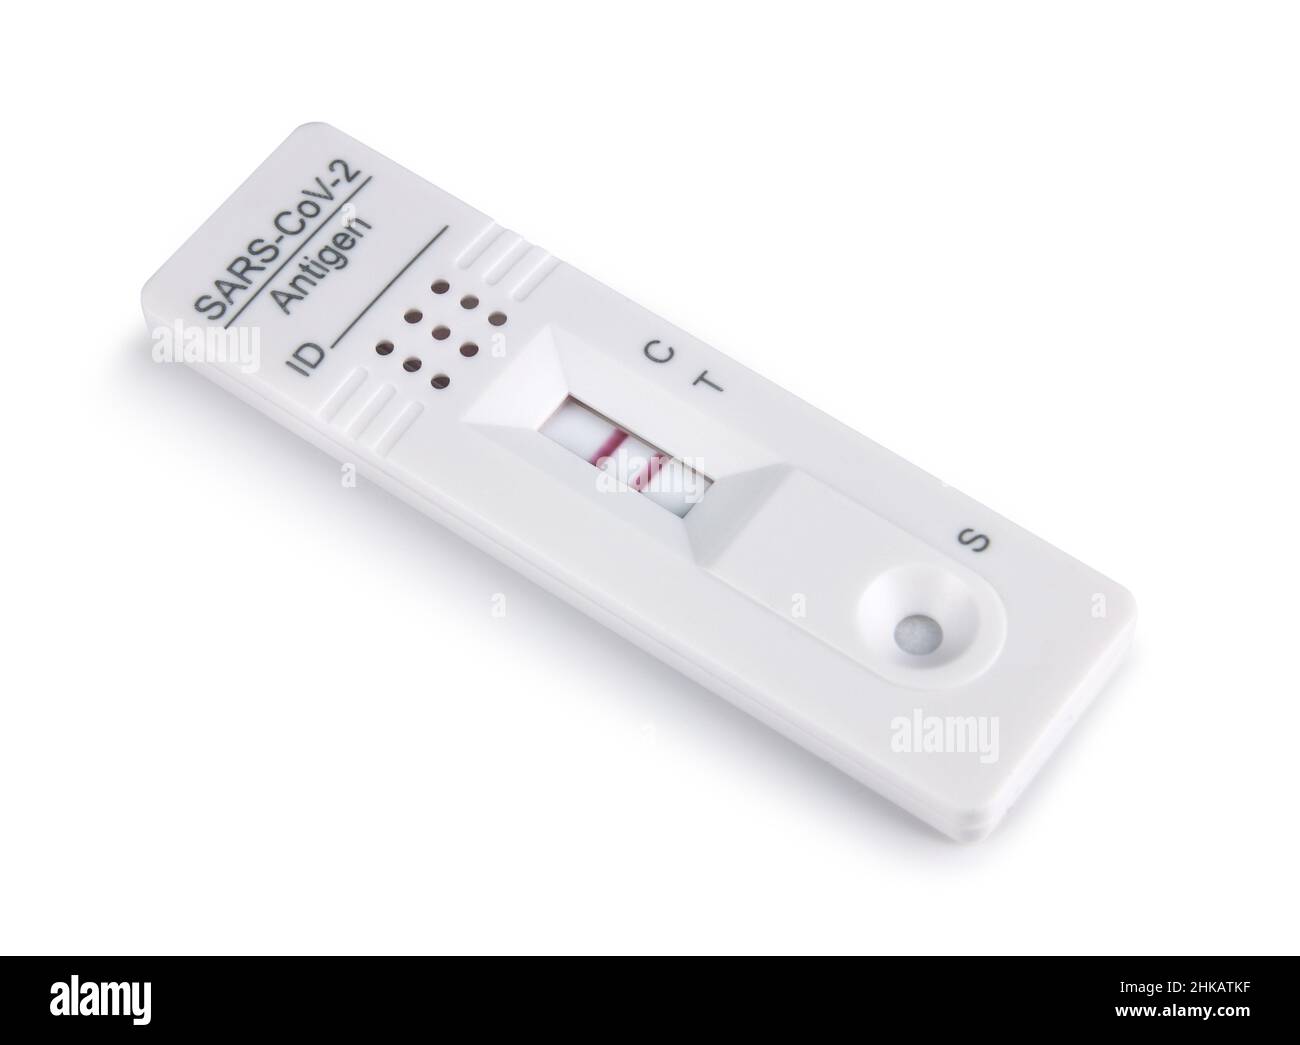 Cassette de kit de test d'antigène du virus corona Covid-19 montrant un résultat positif, isolée sur fond blanc Banque D'Images